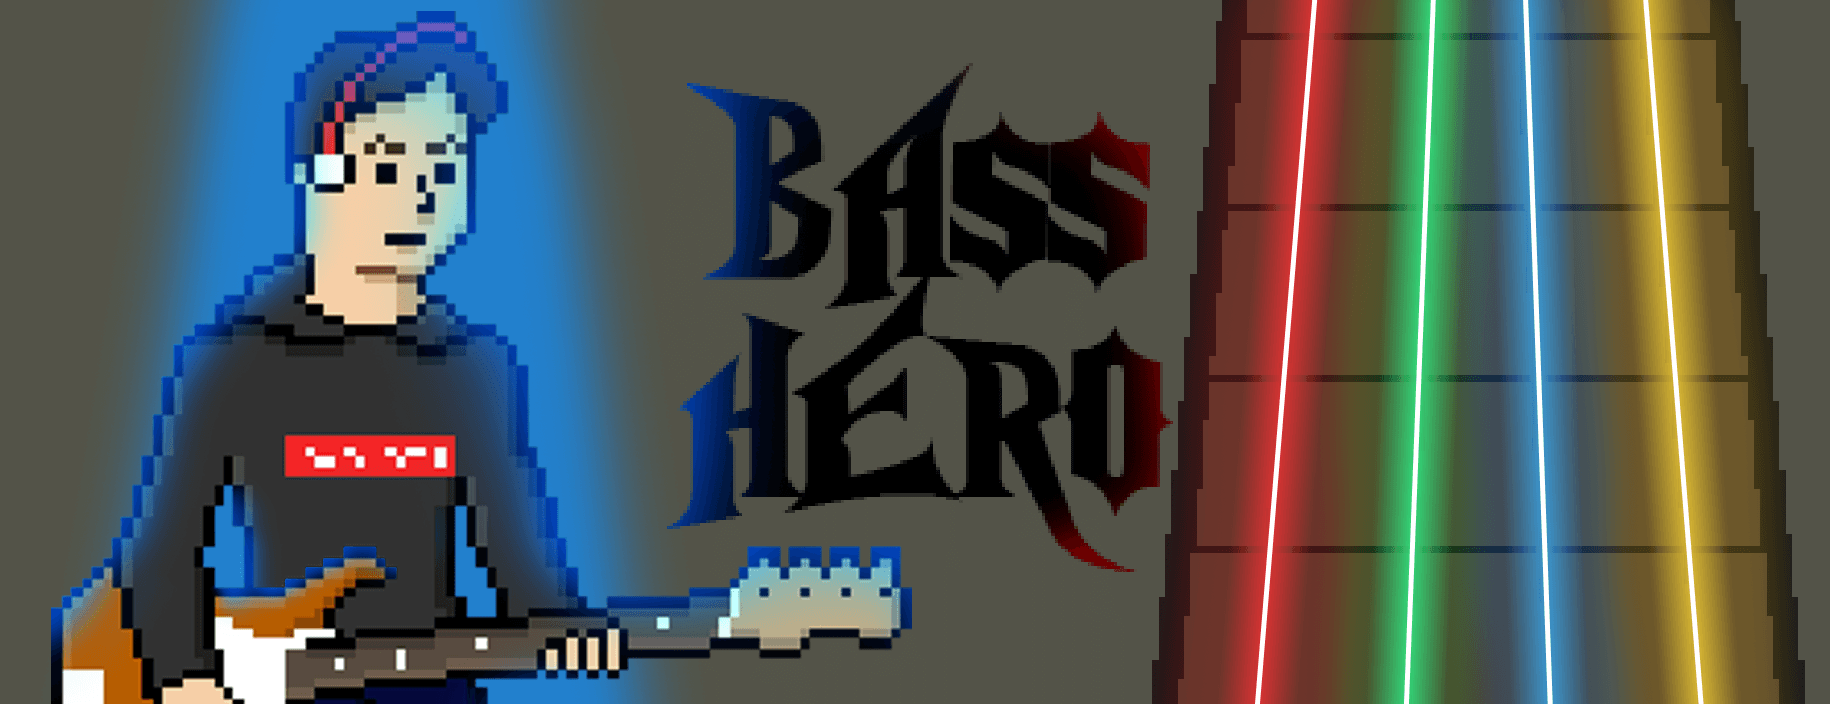 Bass Hero: Starring Davie504